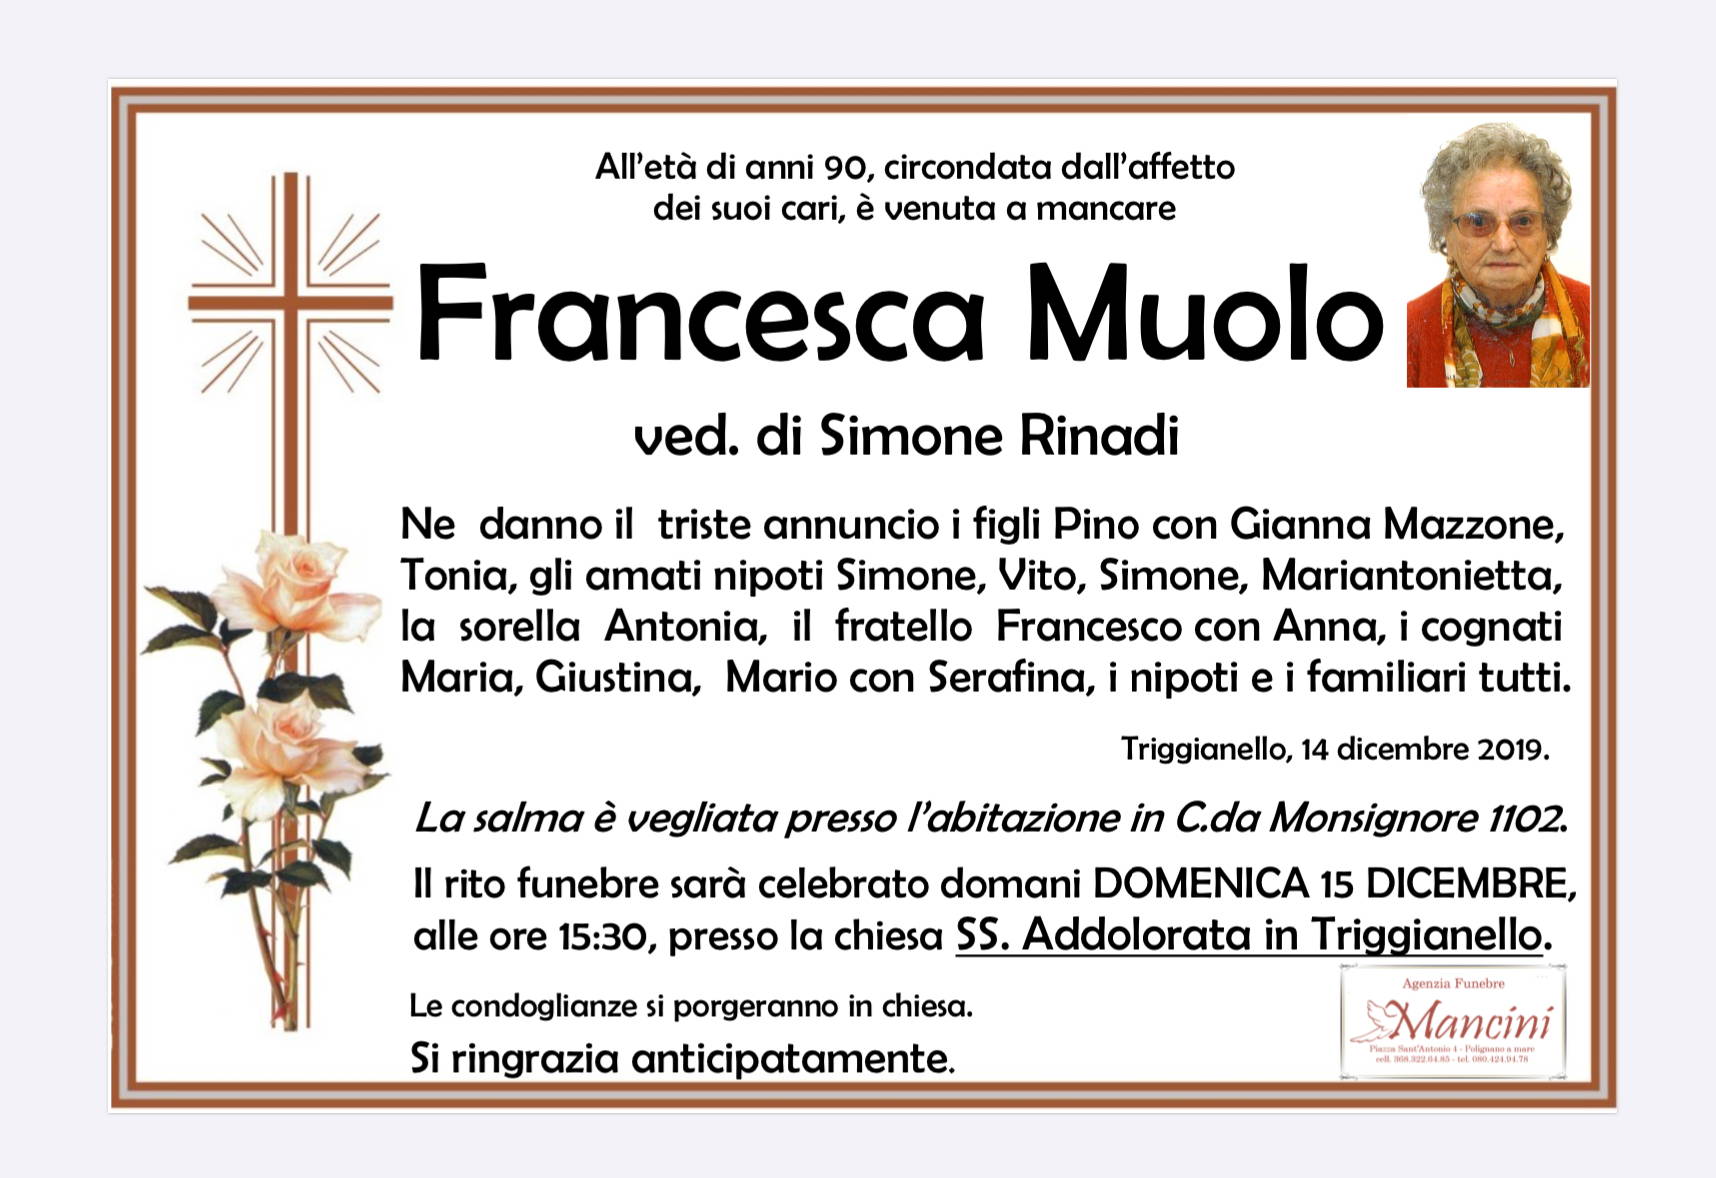 Francesca Muolo